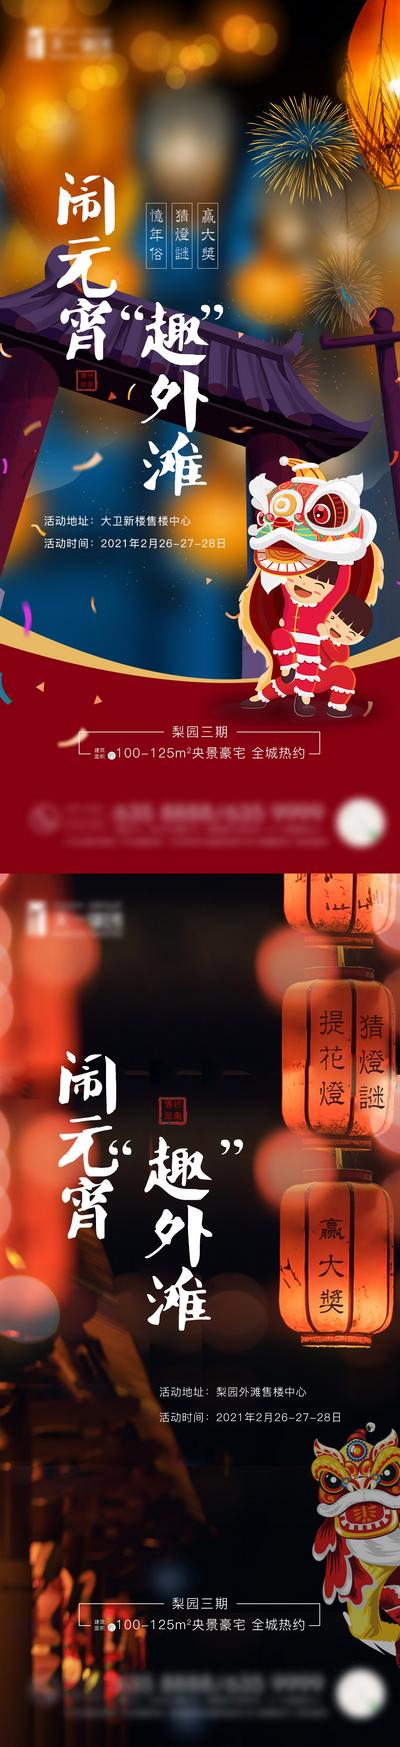 南门网 海报 房地产 中国传统节日 元宵节 系列 灯笼 舞狮